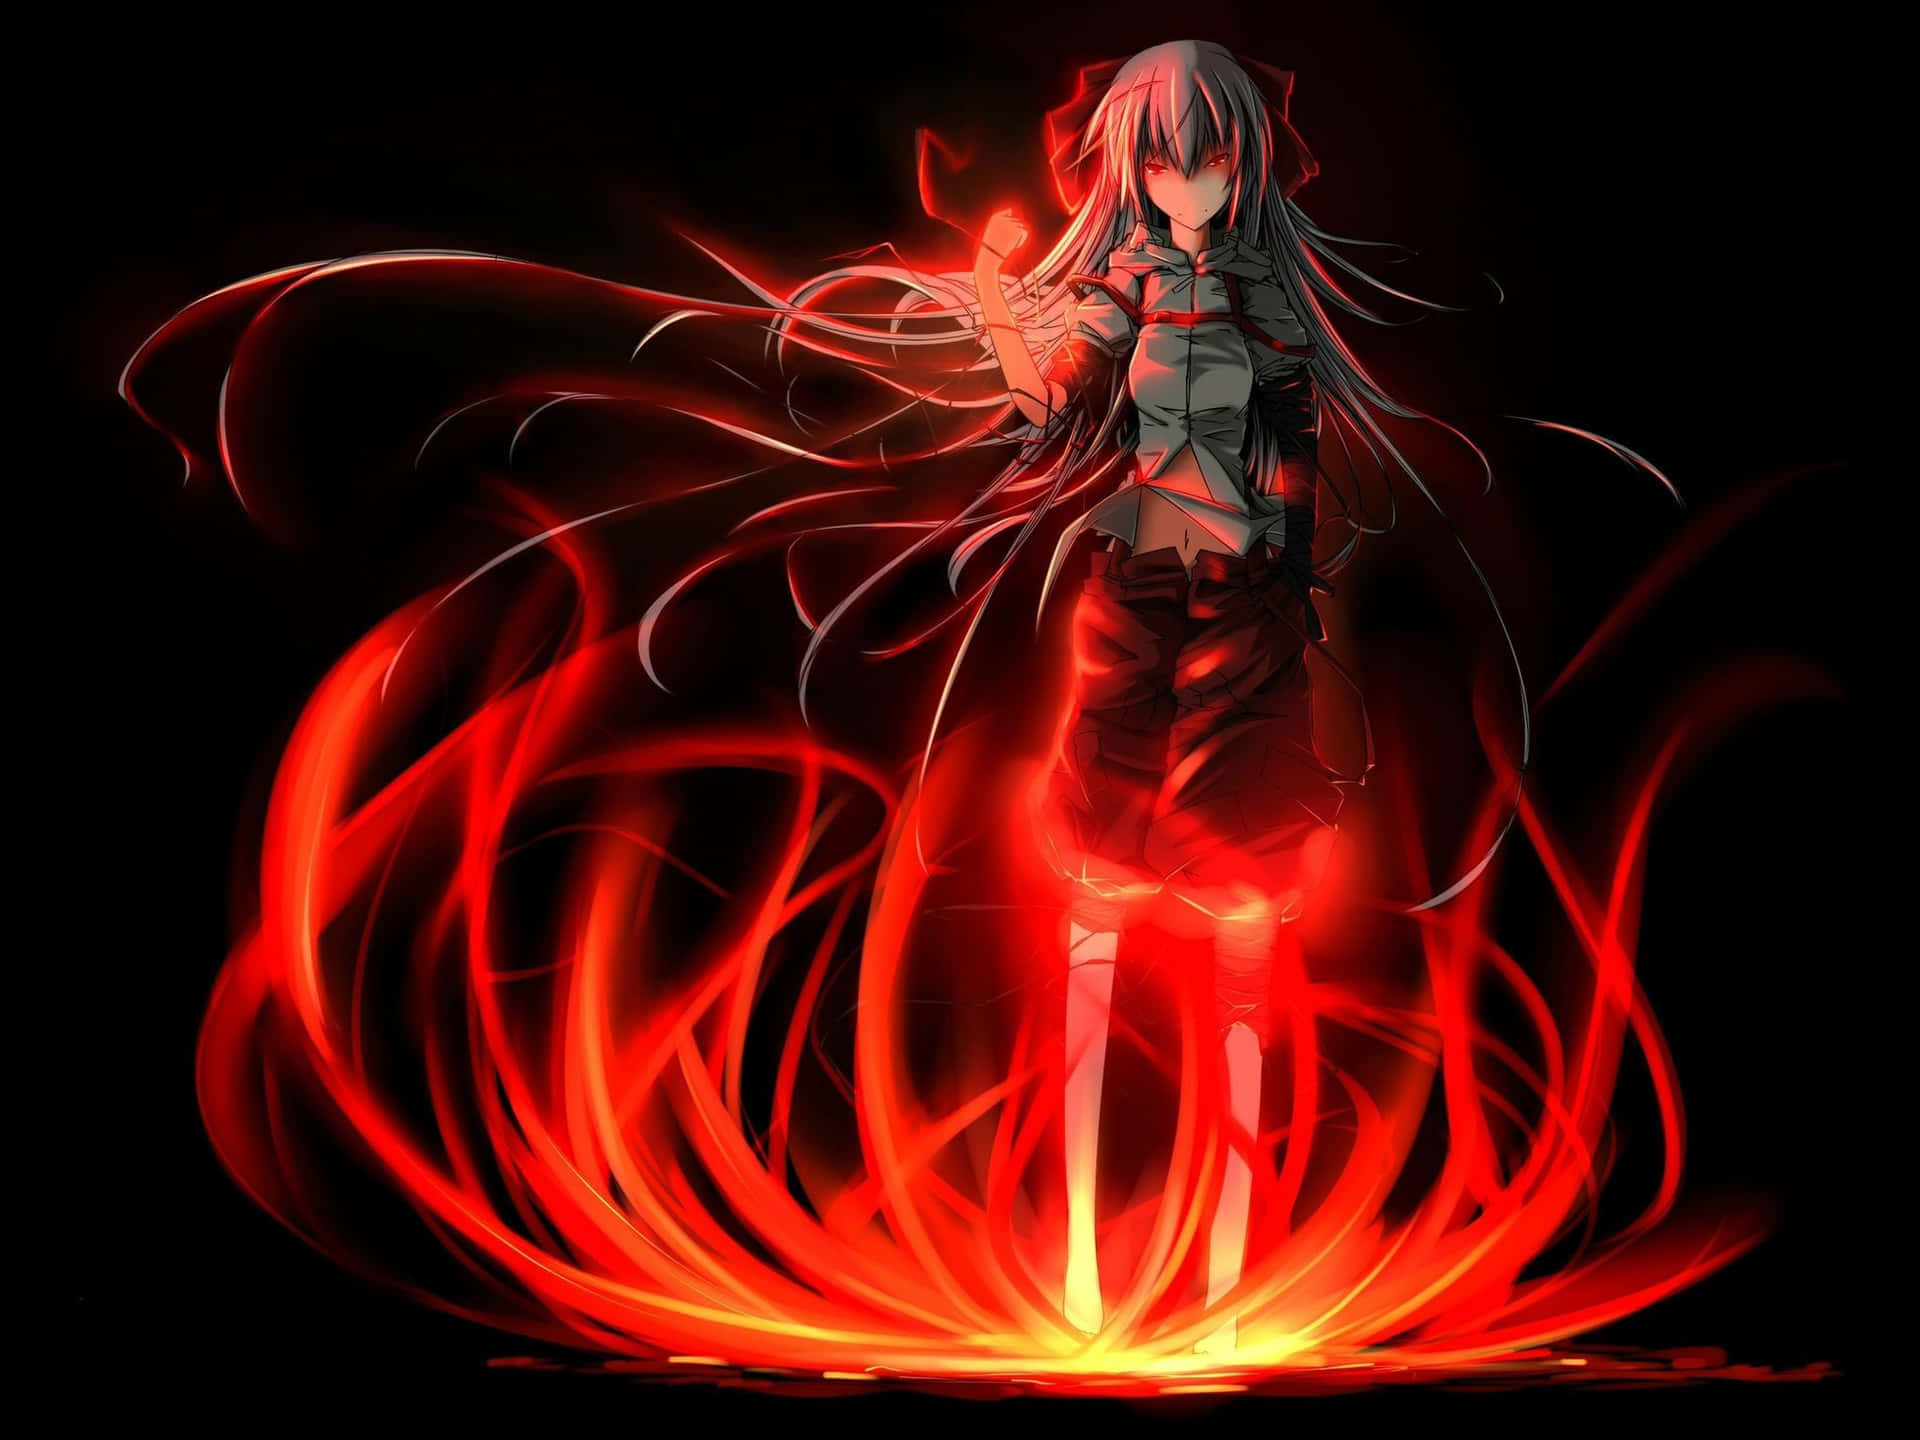 En pige med langt hår står foran ildflammer Wallpaper